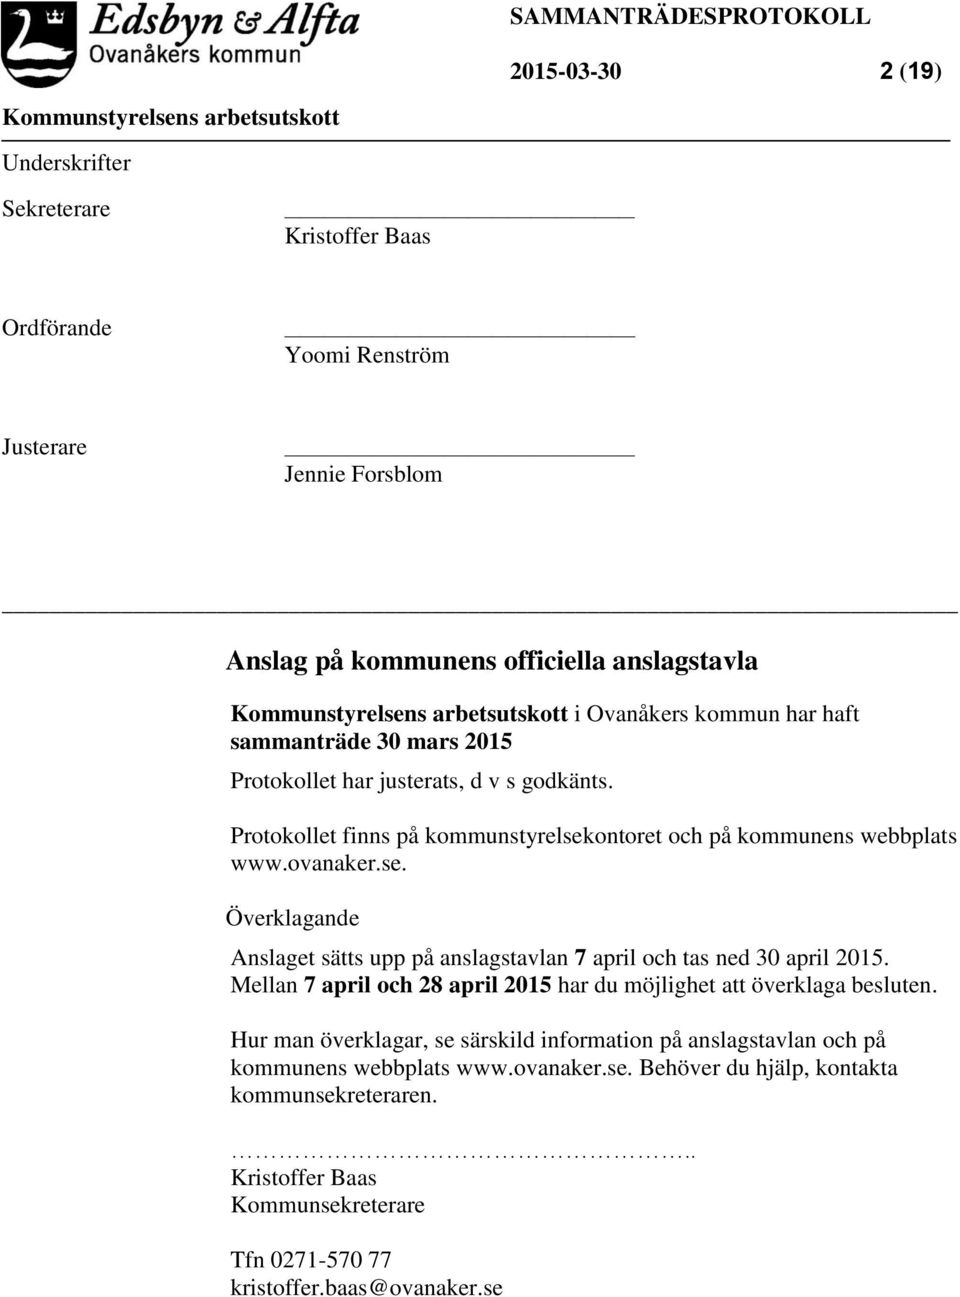 Protokollet finns på kommunstyrelsekontoret och på kommunens webbplats www.ovanaker.se. Överklagande Anslaget sätts upp på anslagstavlan 7 april och tas ned 30 april 2015.